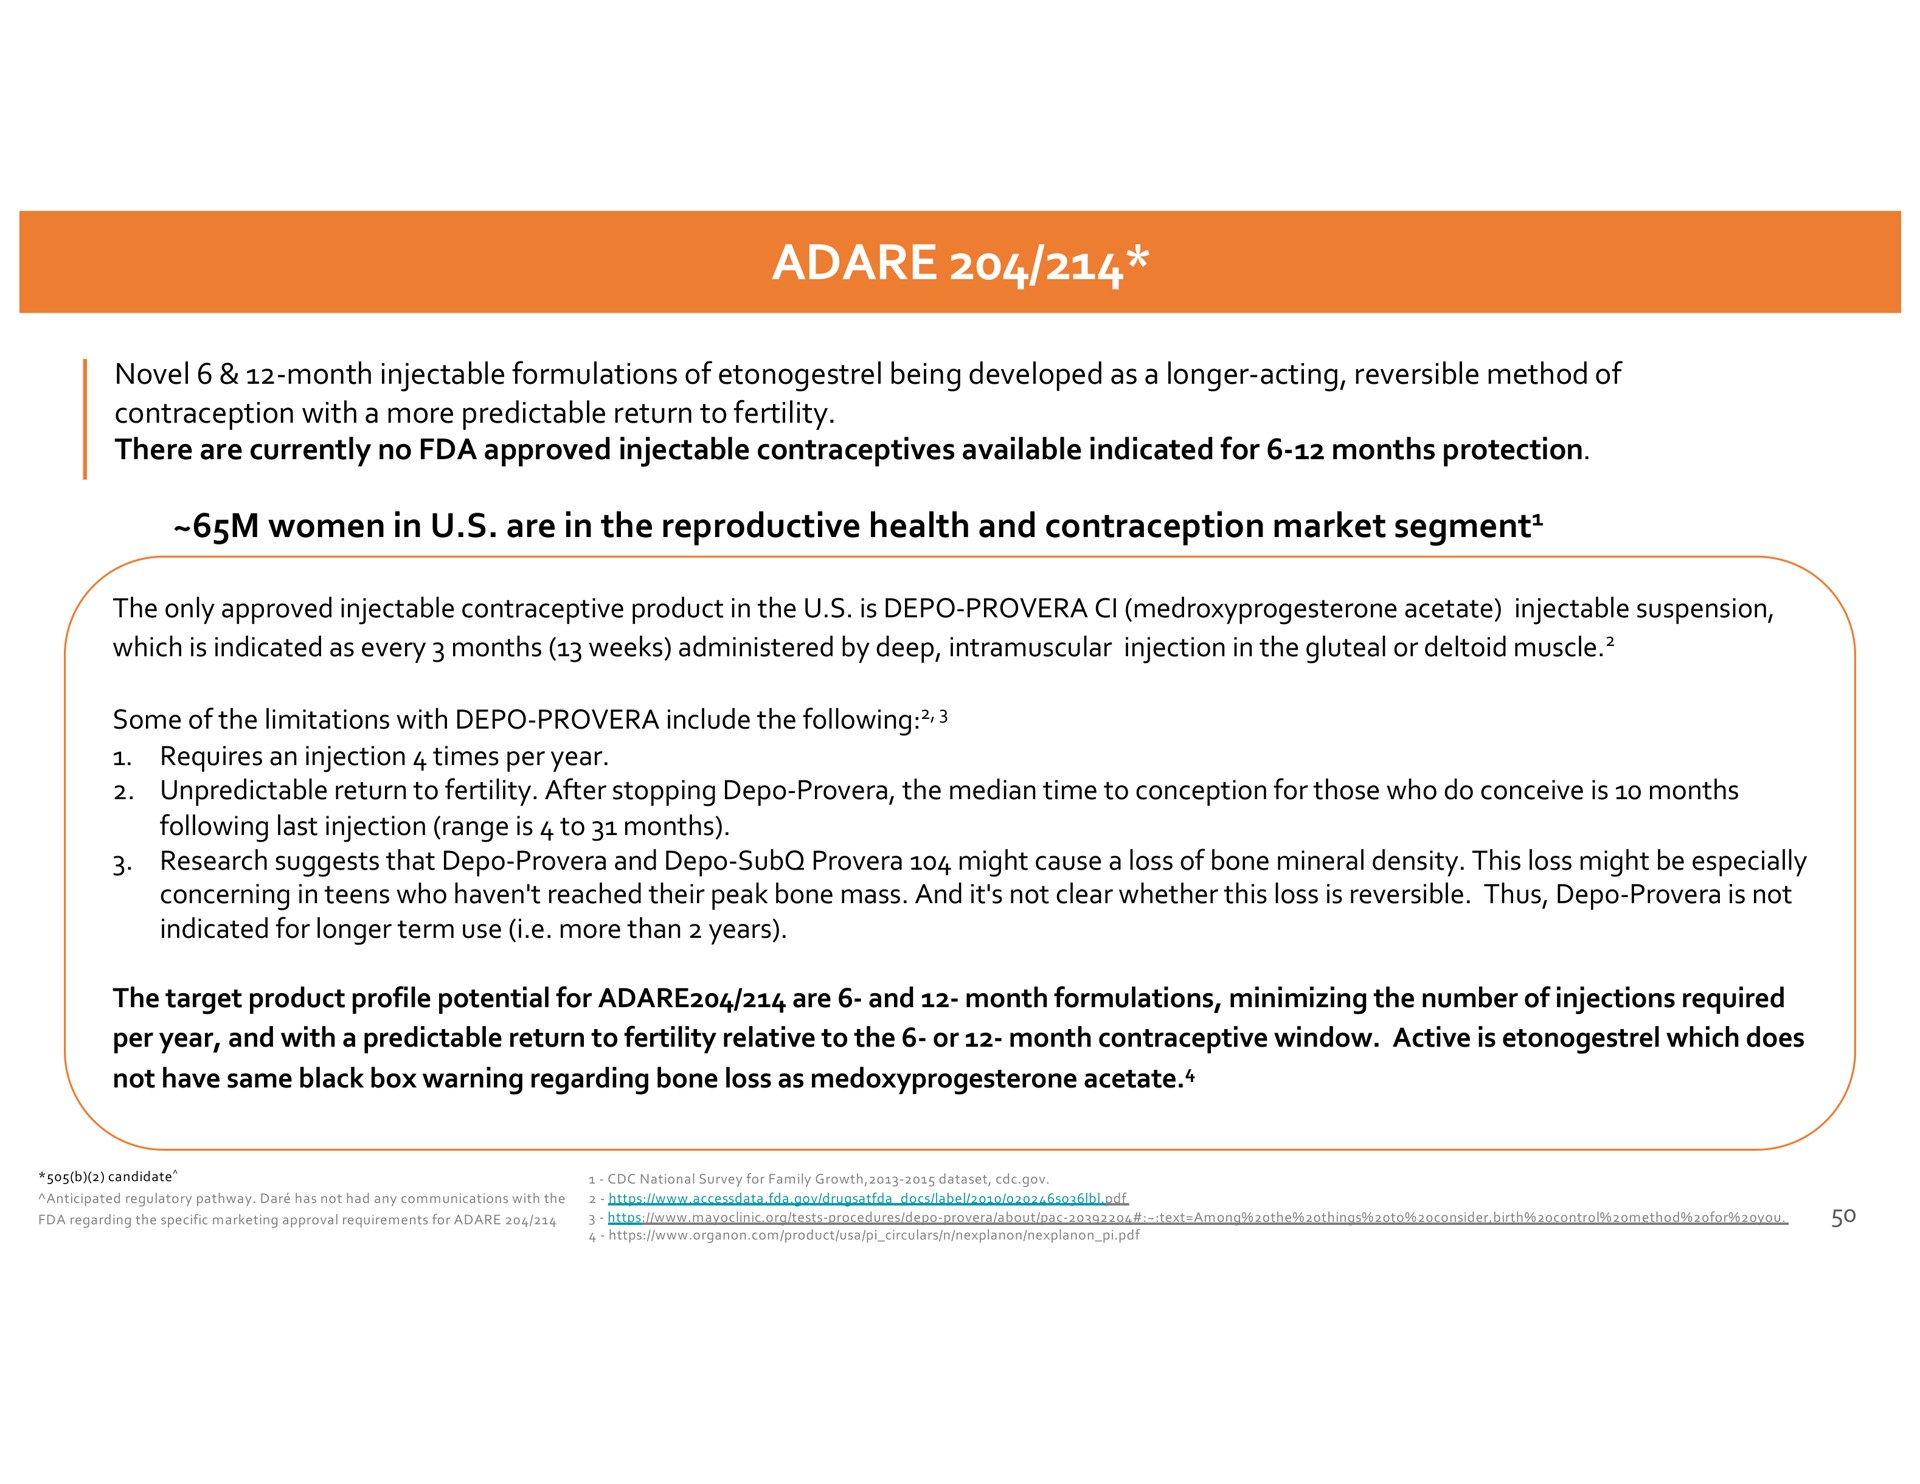 women in are in the reproductive health and contraception market segment segment | Dare Bioscience